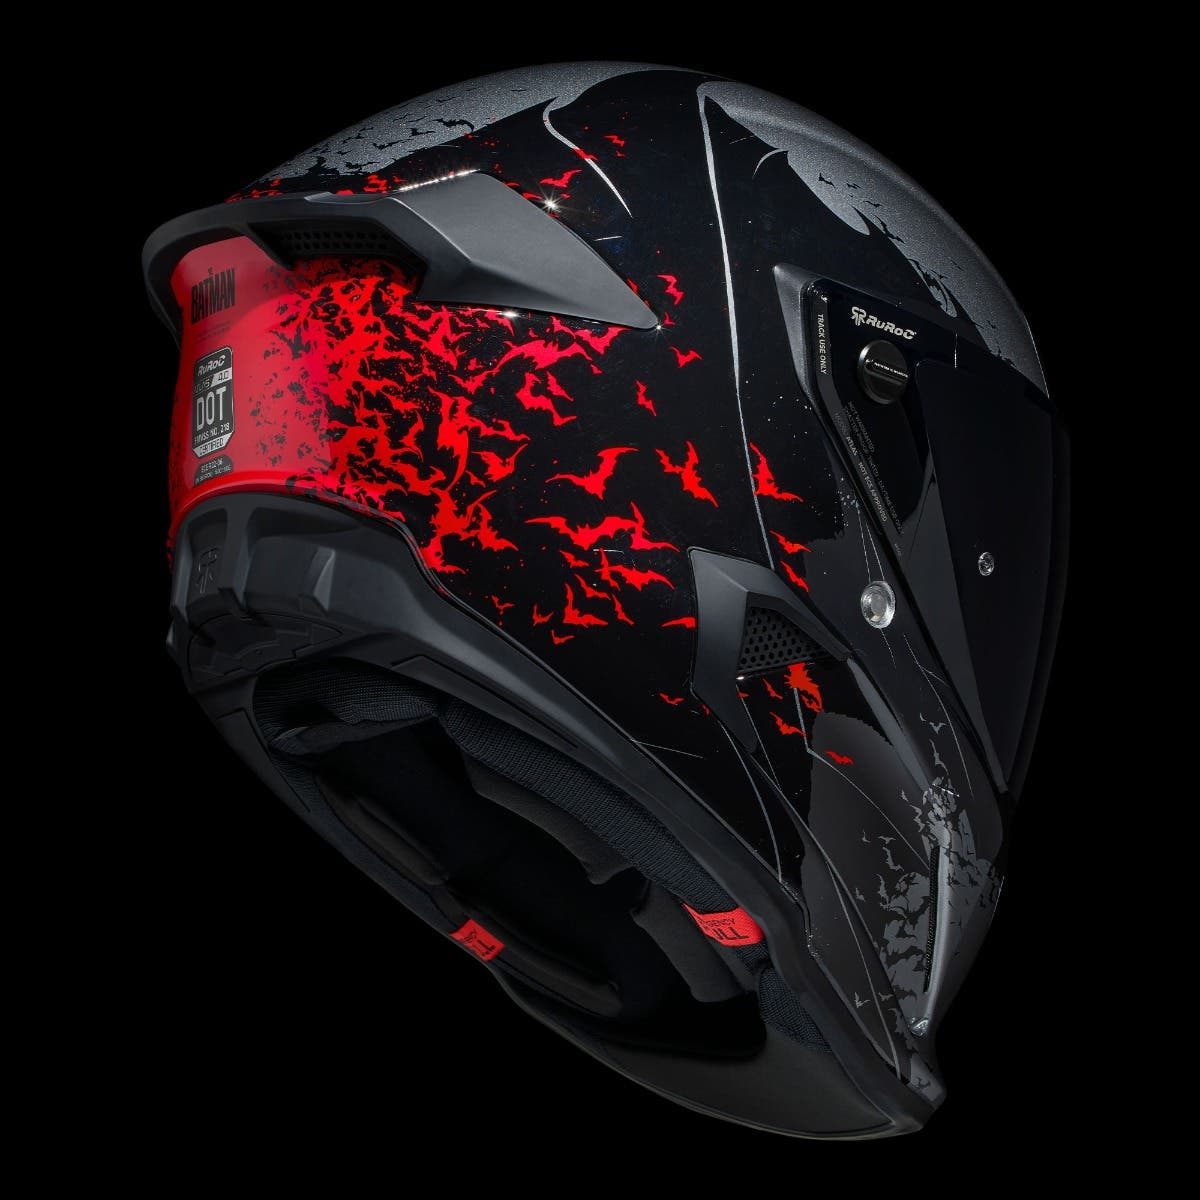 ATLAS 4.0 The Batman - Motorcycle Helmet - Ruroc